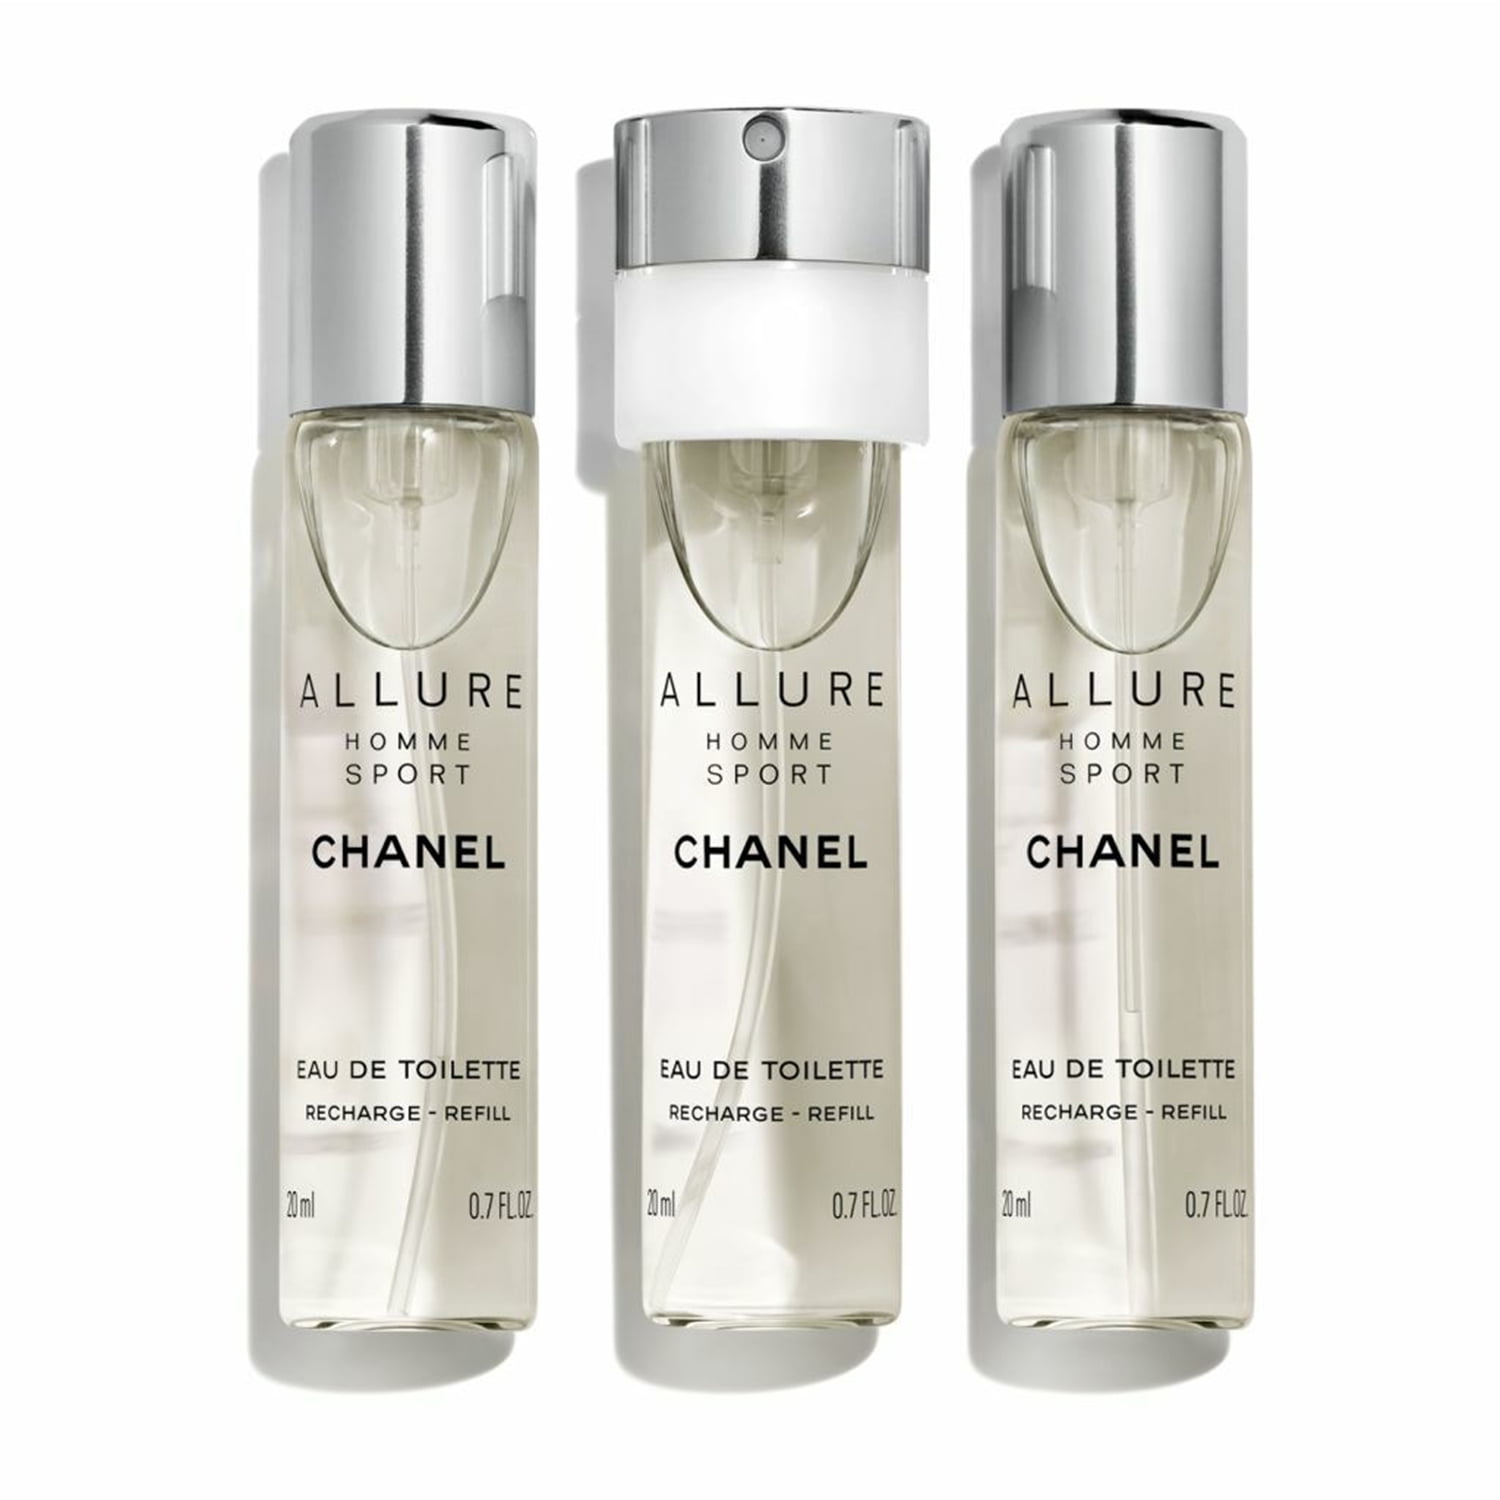 Chanel Allure Homme Sport Eau de Toilette pack of 3 0.7 oz each